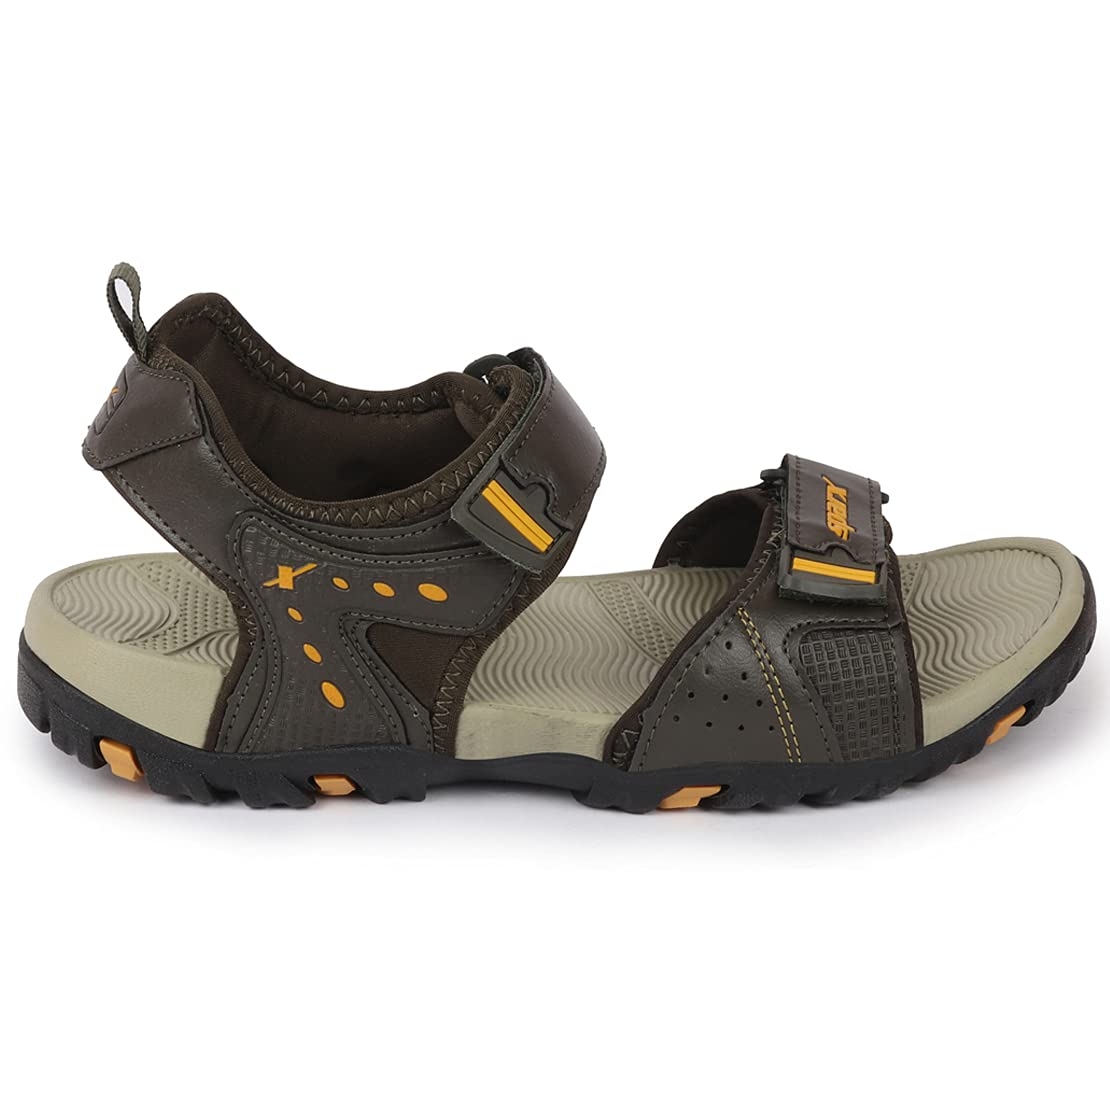 Buy Sandals for men ss-606 - Sandals Slippers for Men | Relaxo